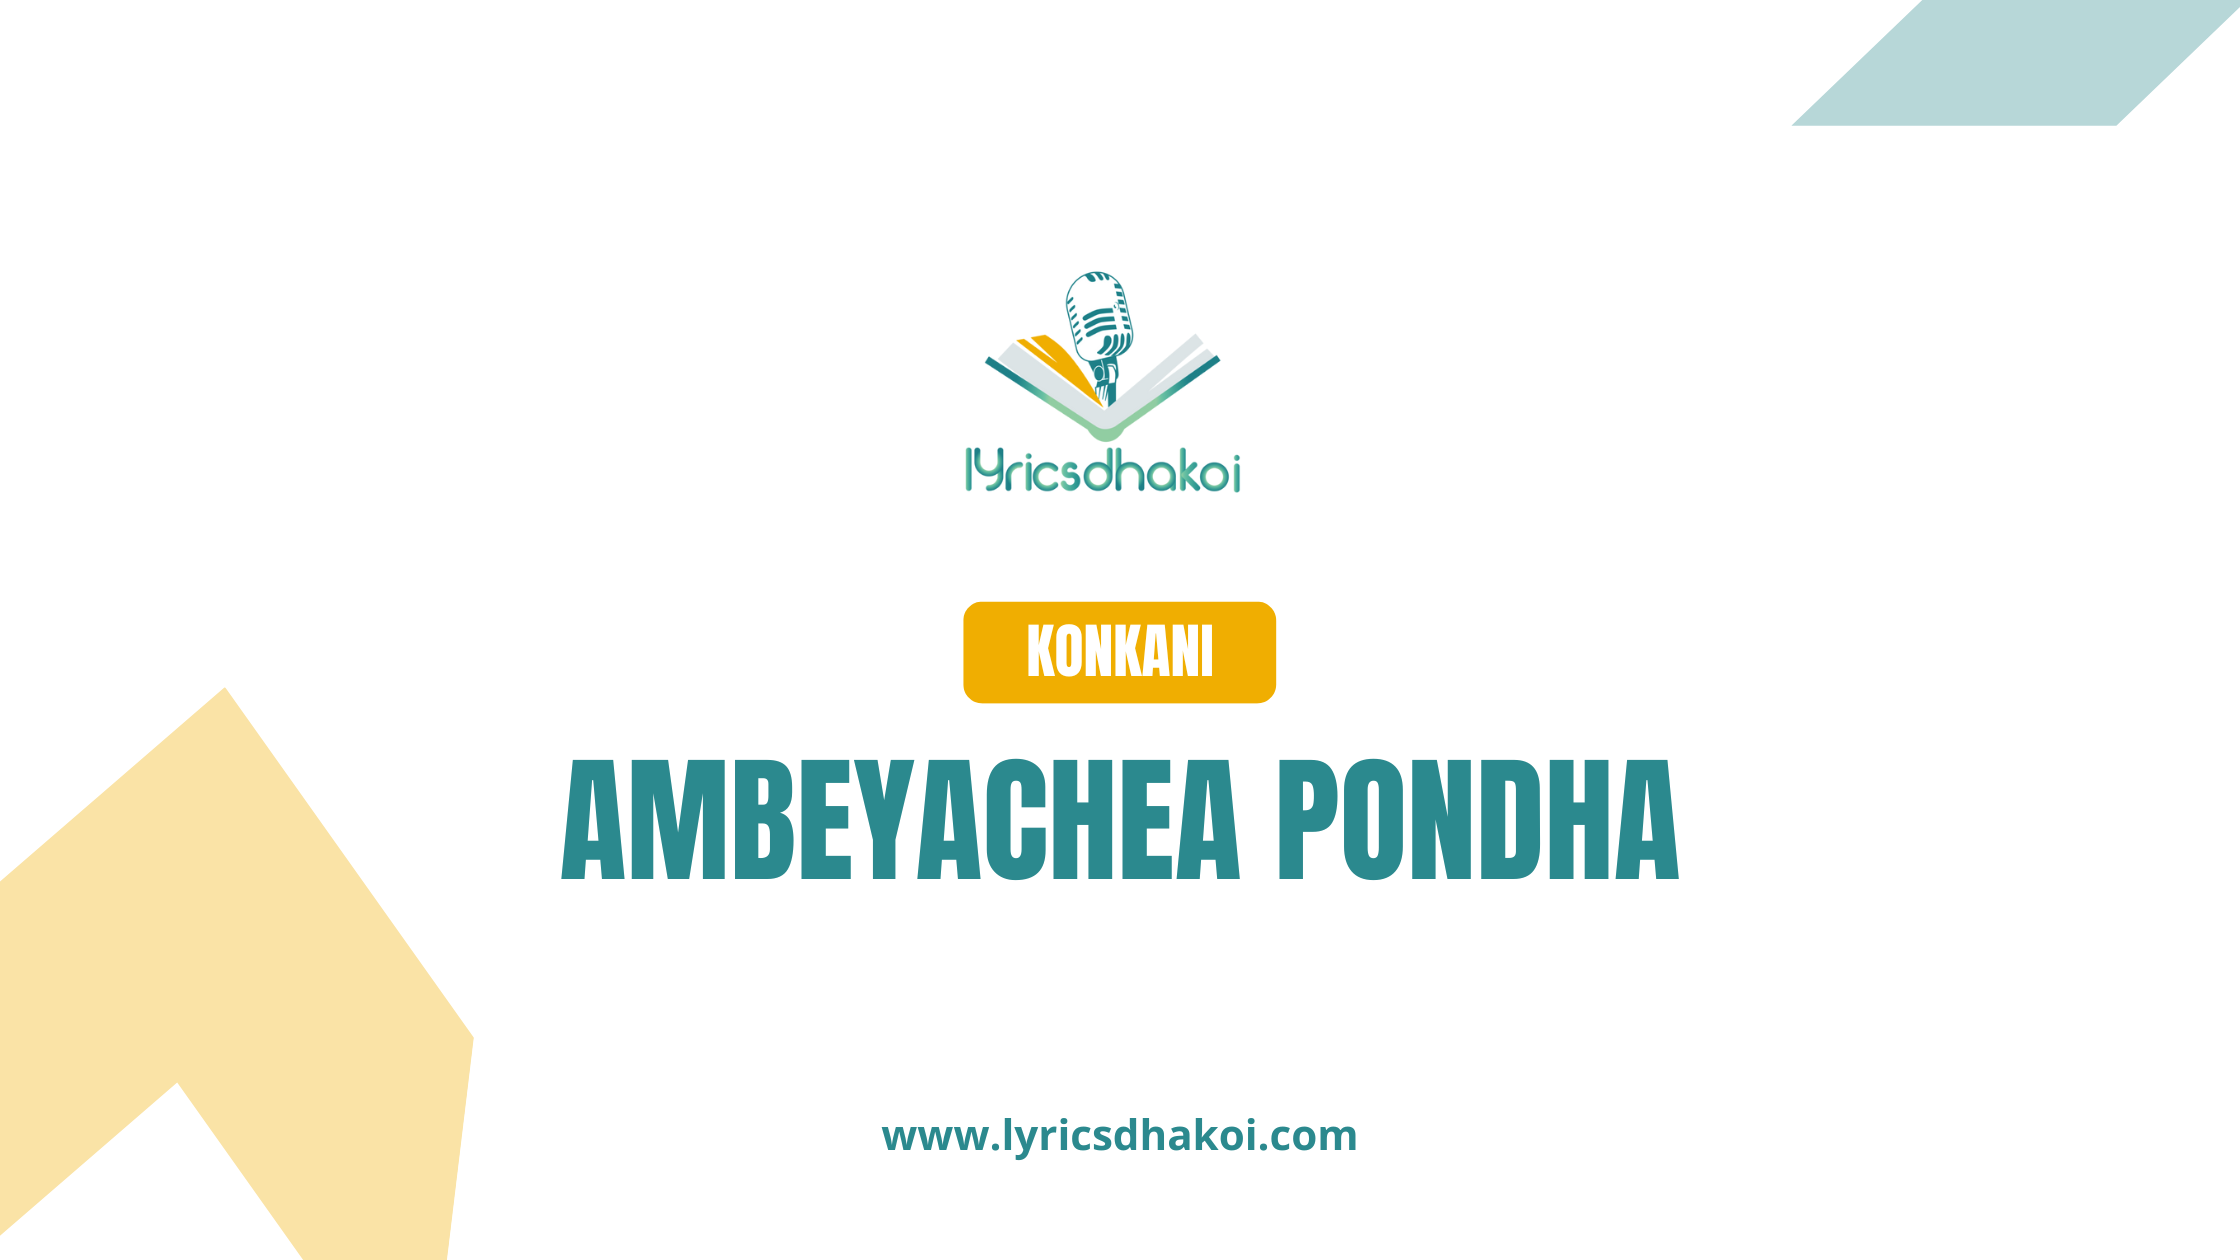 Ambeyachea Pondha Konkani Lyrics for Karaoke Online - LyricsDhakoi.com